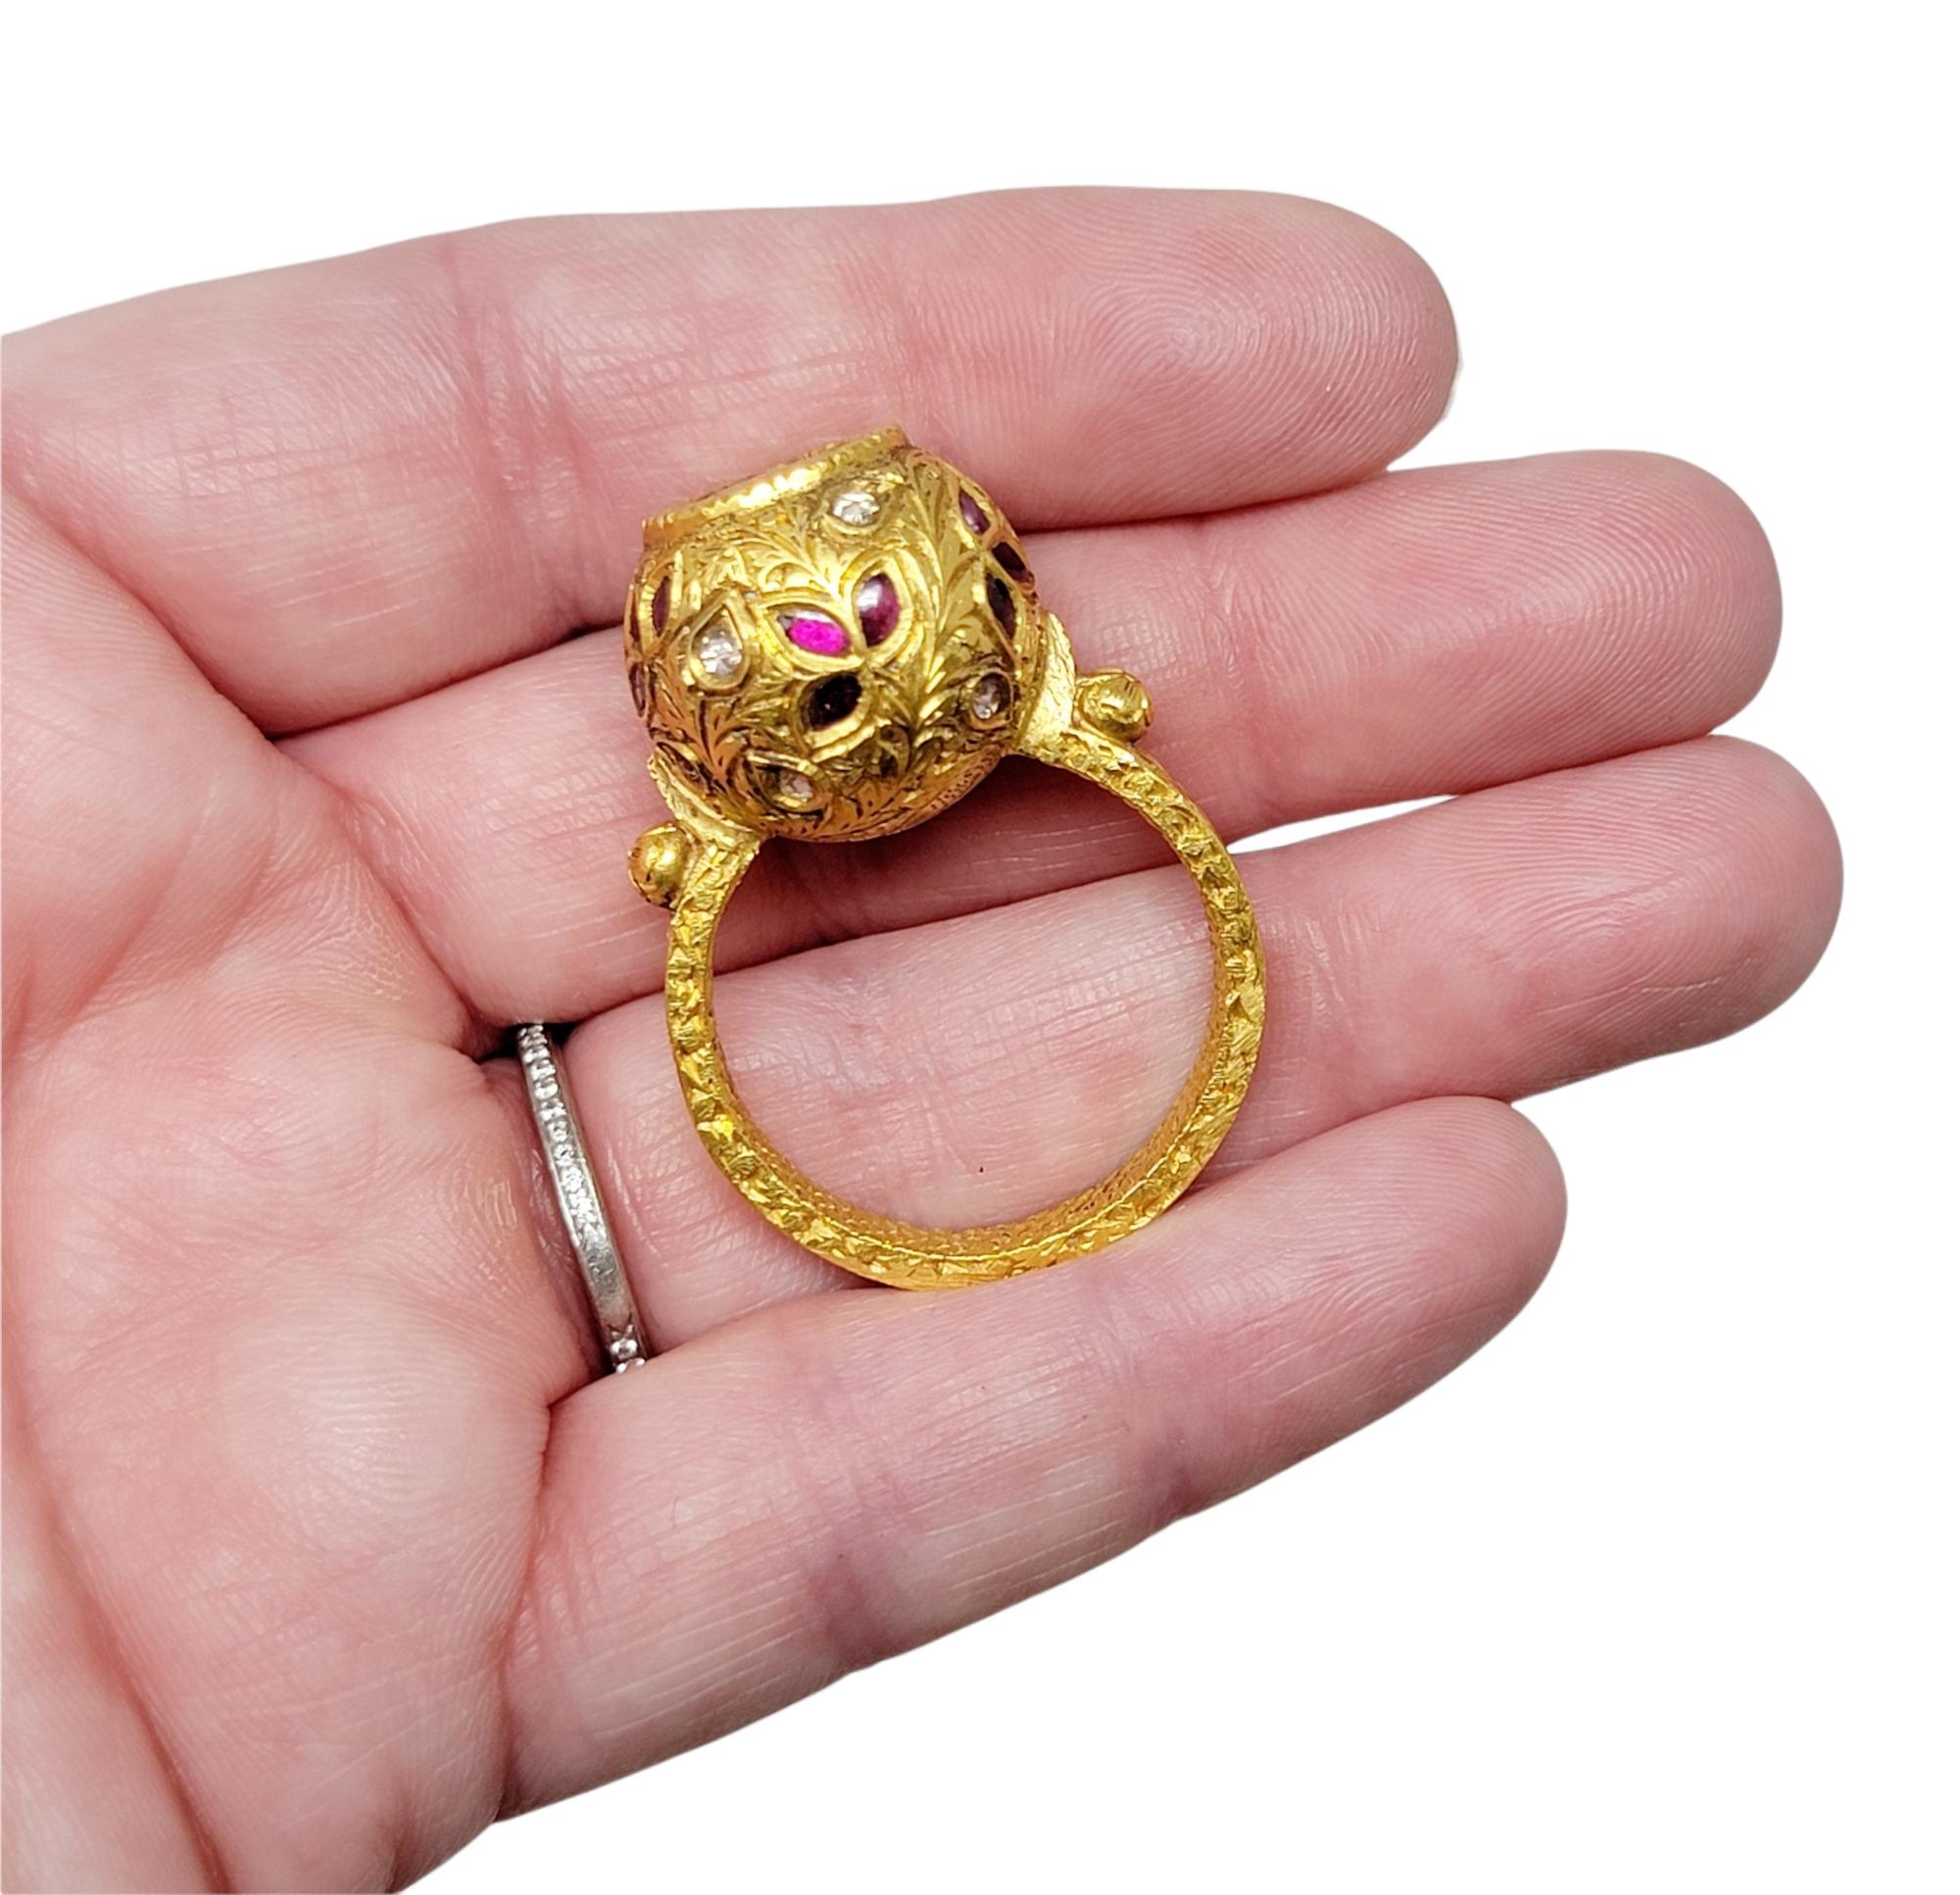 1.52 Carat Total Polki and Rose Cut Diamond Ring 21 Karat Yellow Gold Ornate For Sale 2